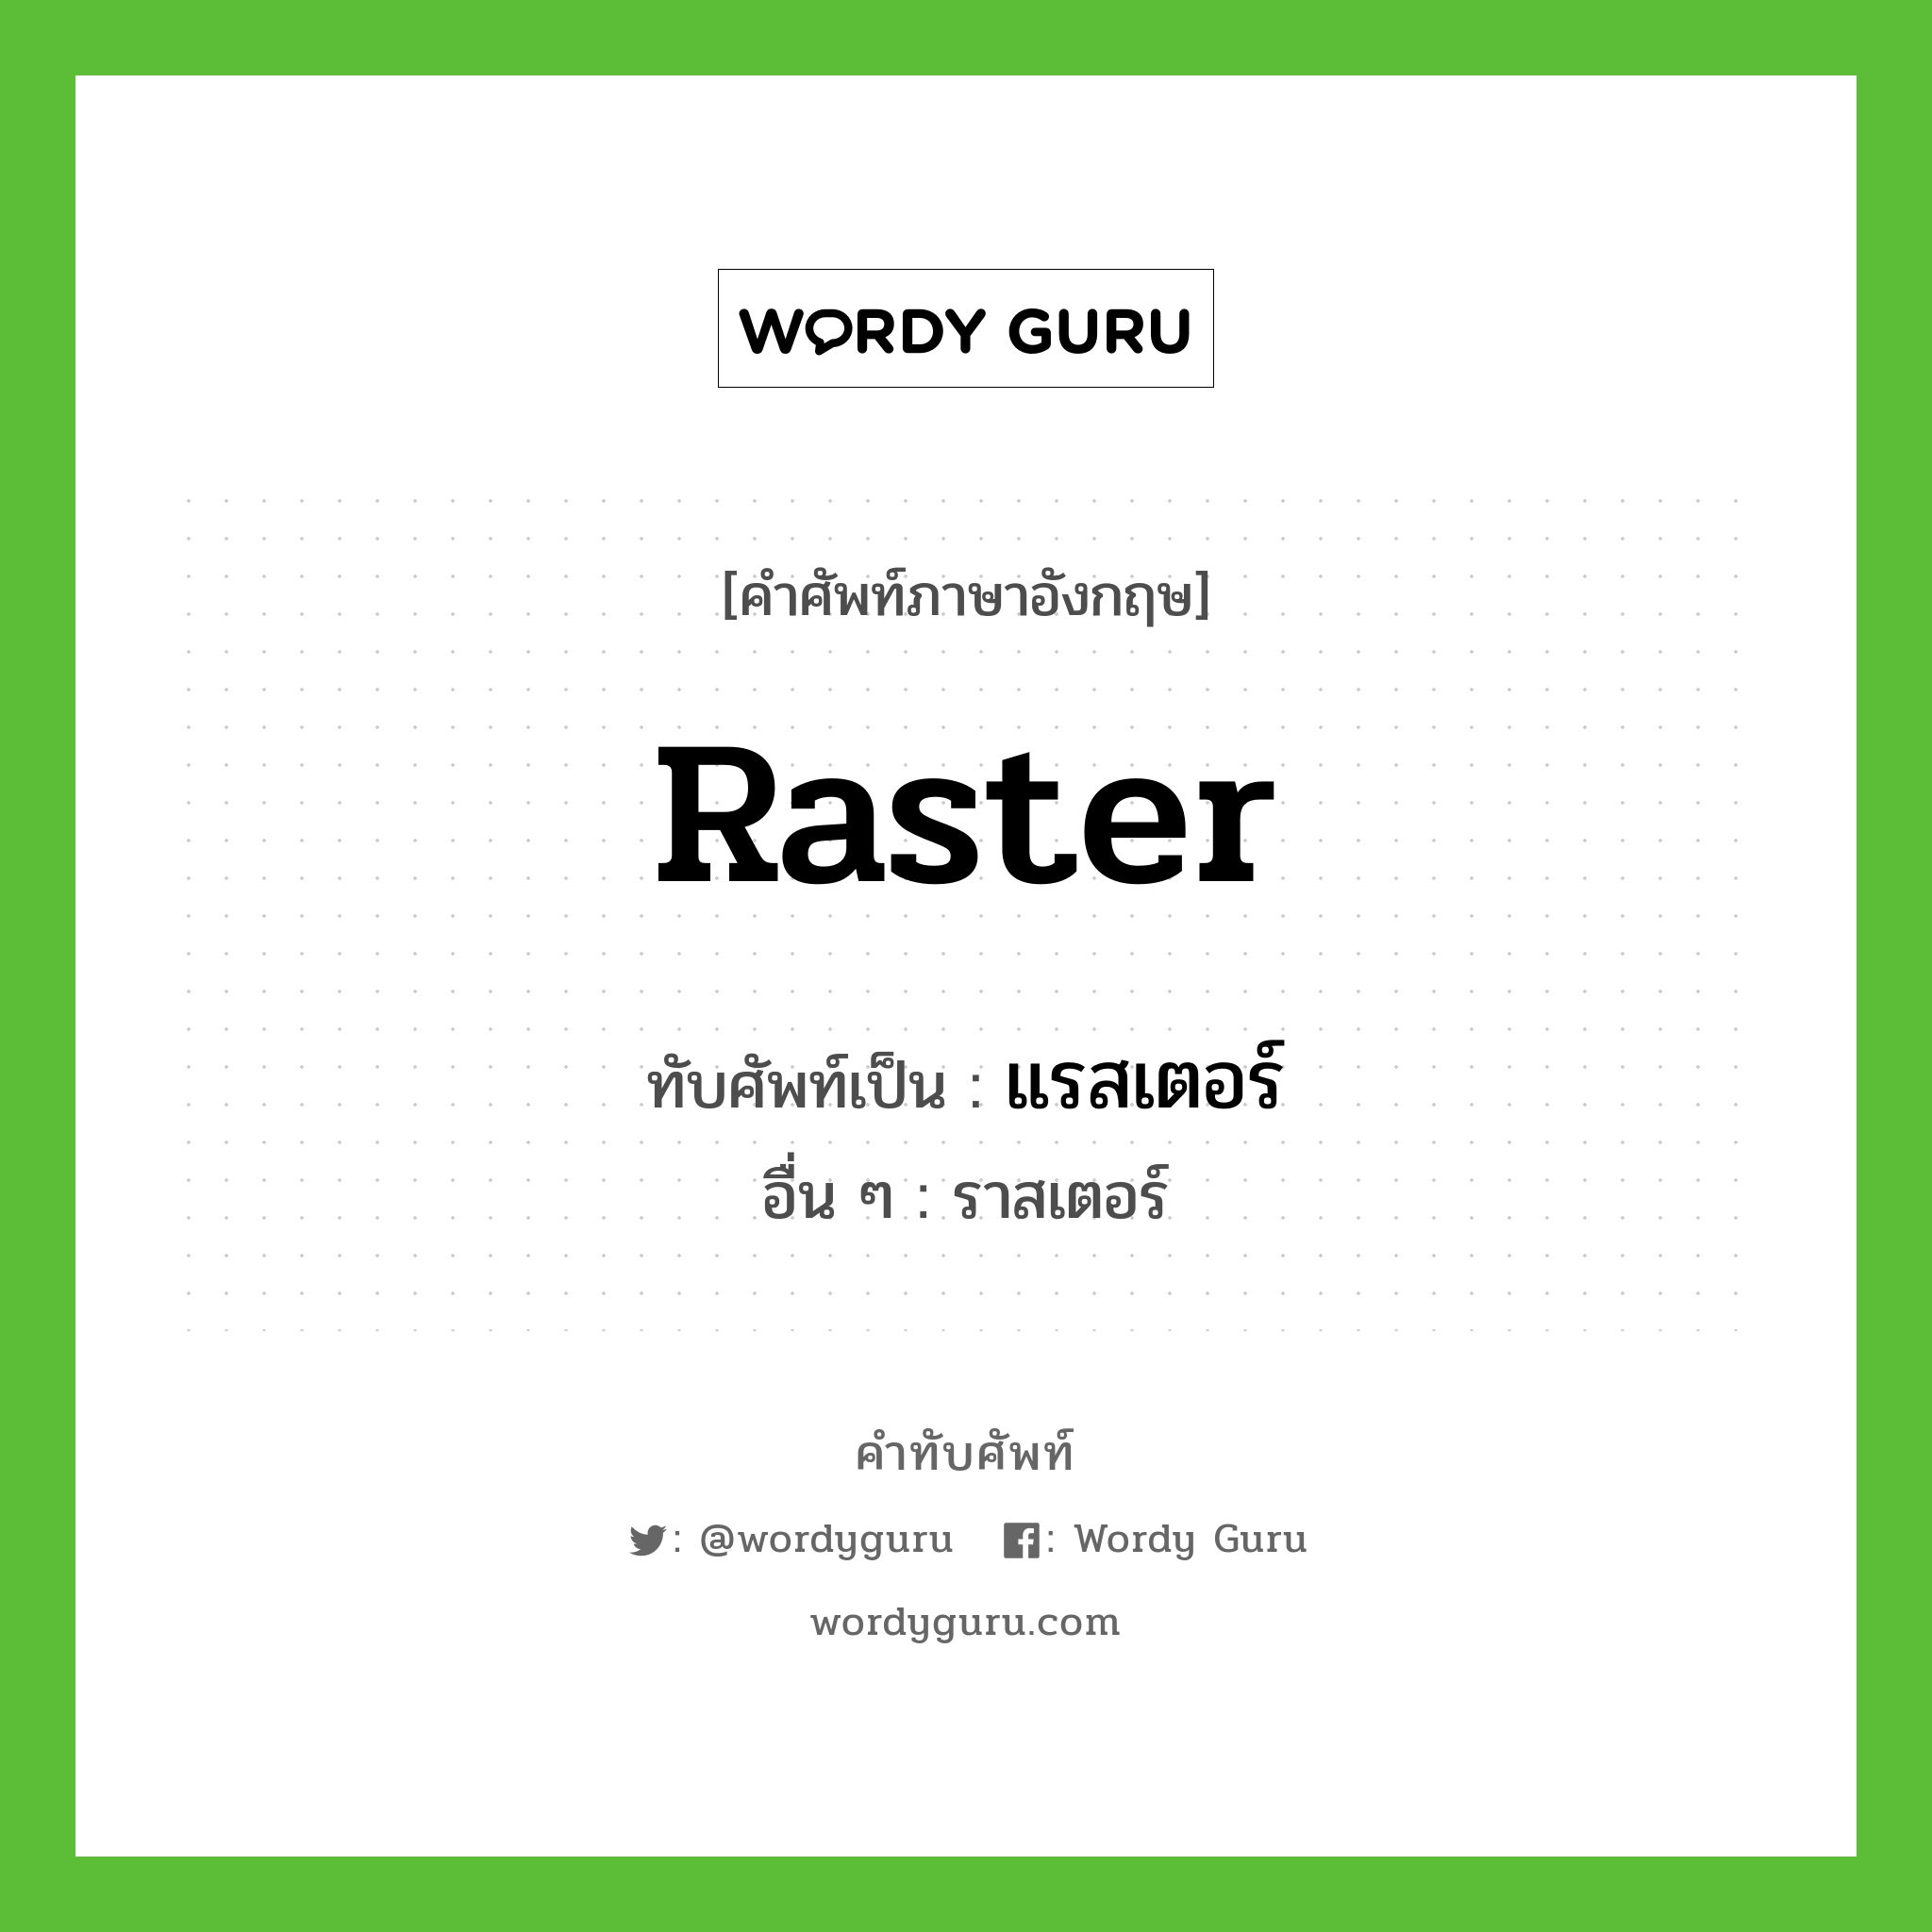 raster เขียนเป็นคำไทยว่าอะไร?, คำศัพท์ภาษาอังกฤษ raster ทับศัพท์เป็น แรสเตอร์ อื่น ๆ ราสเตอร์